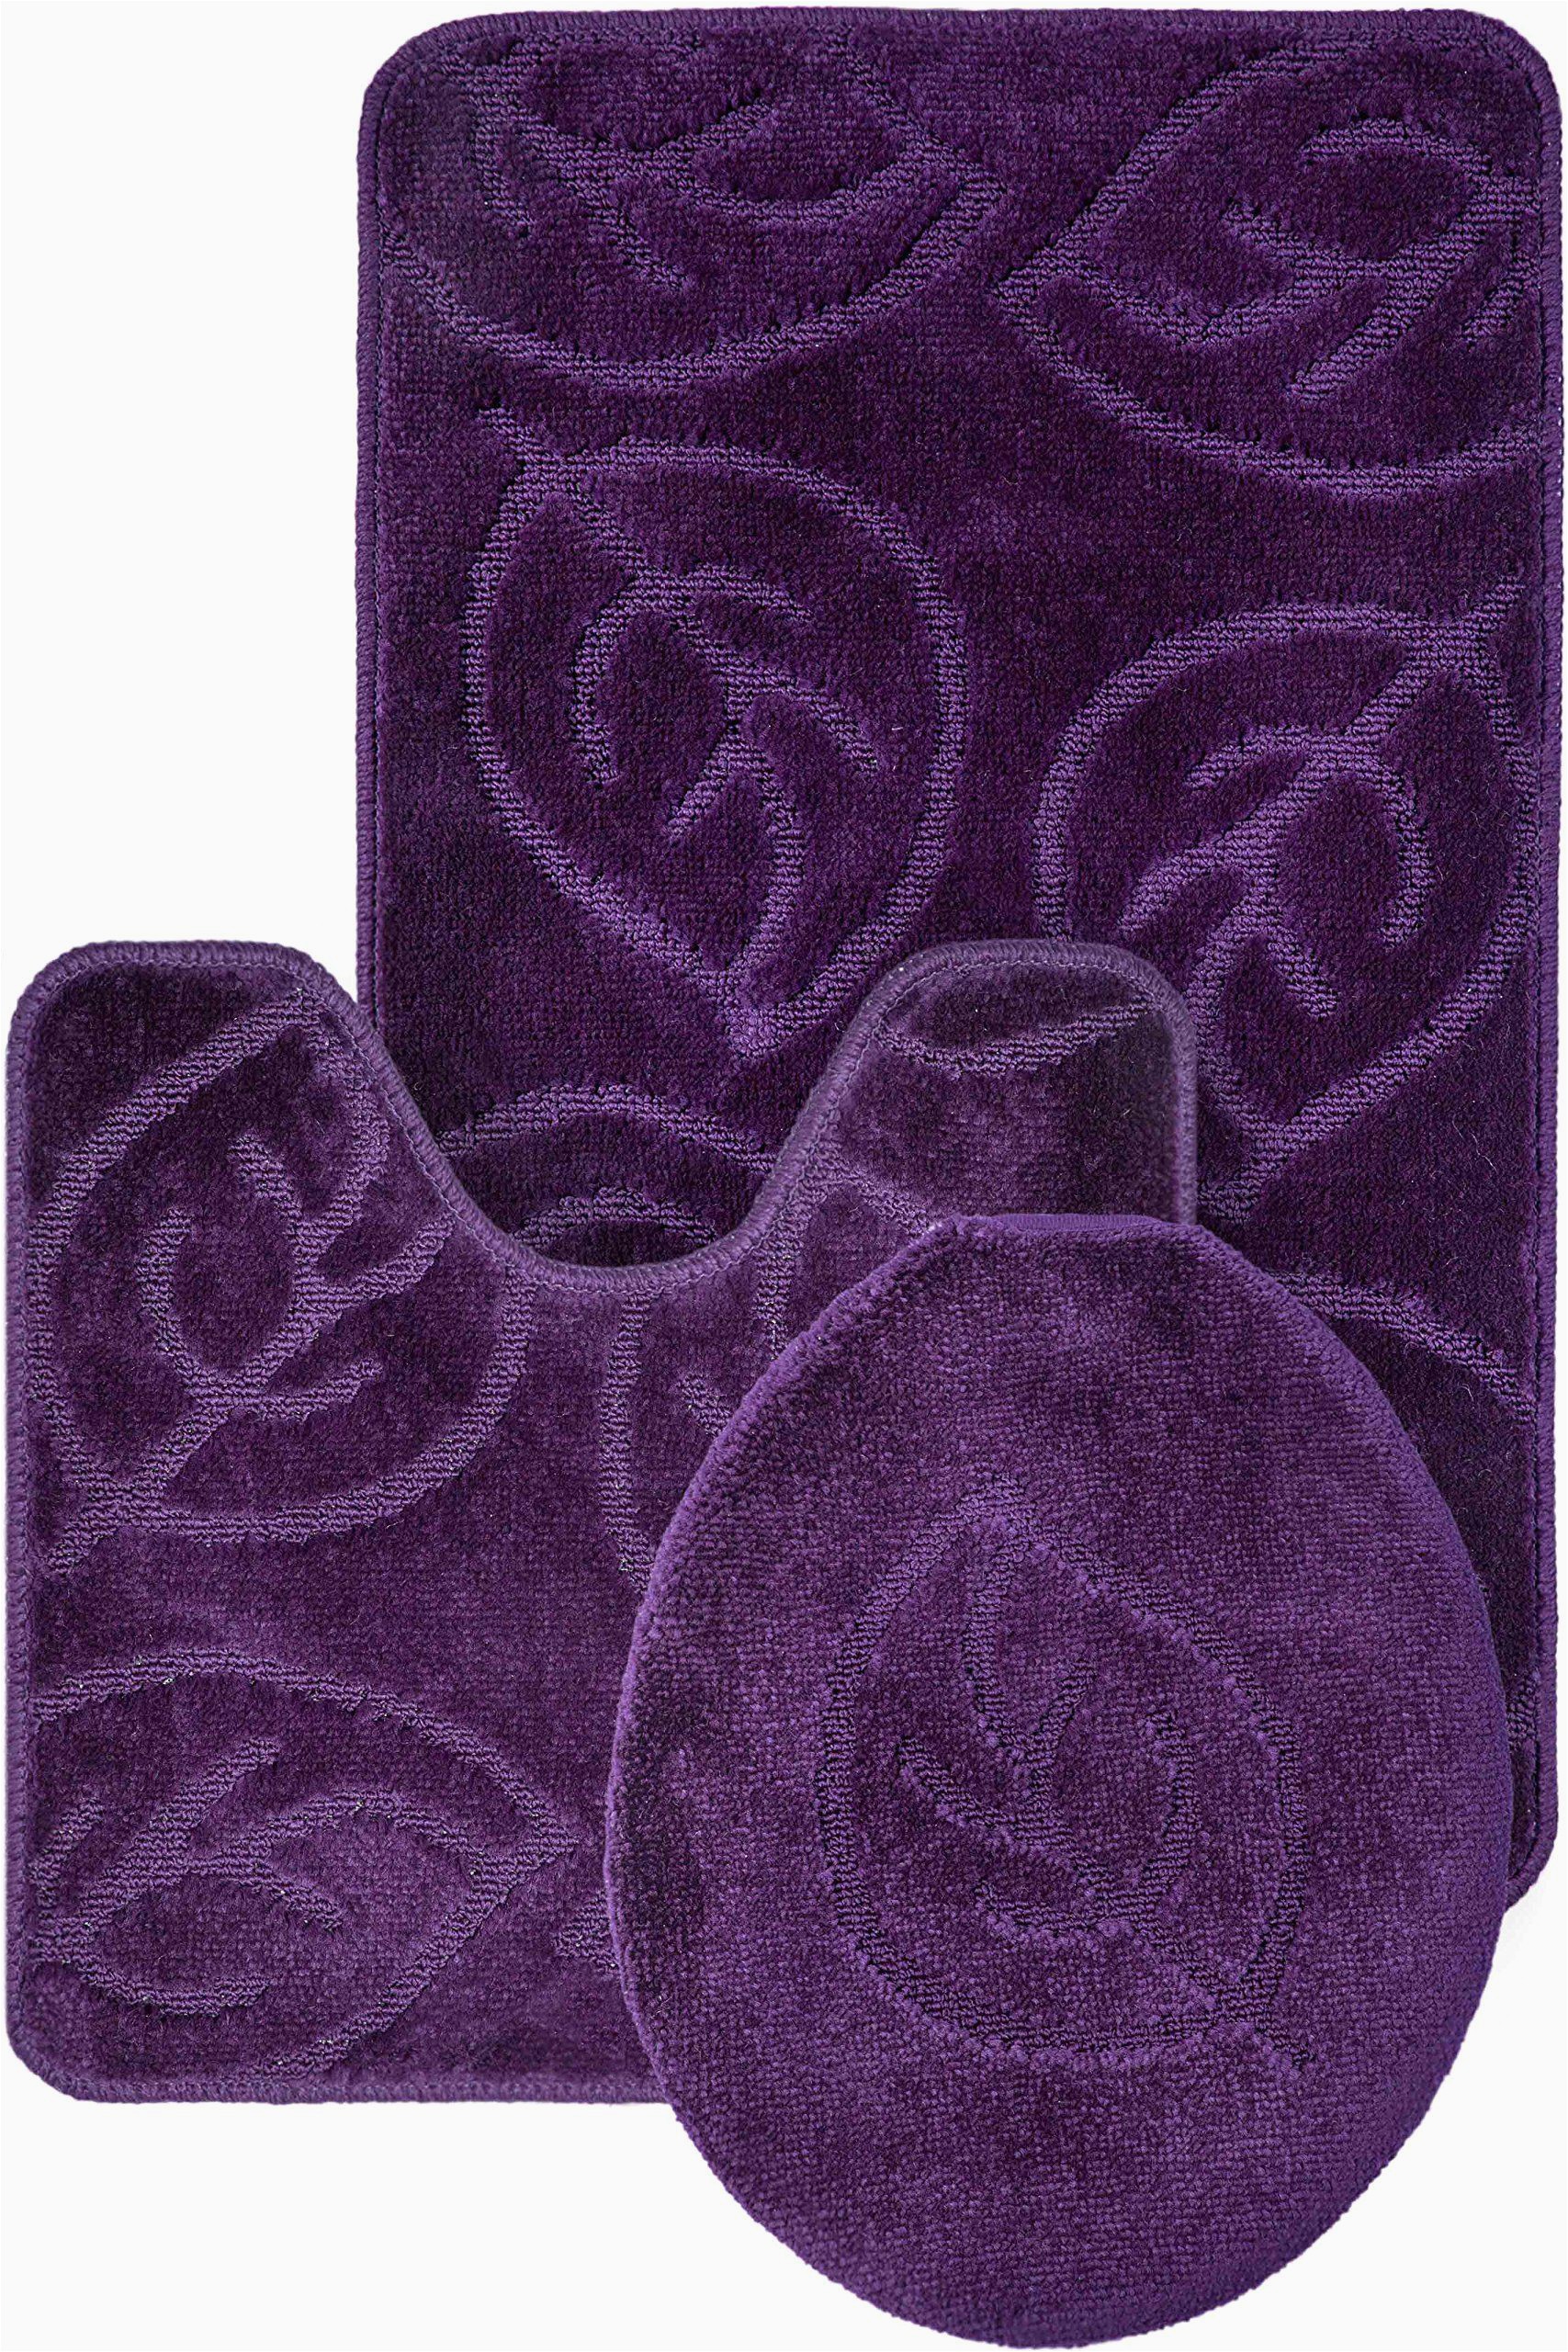 Bath Rug Sets On Sale Everdayspecial Purple Bath Set Leaf Pattern Bathroom Rug